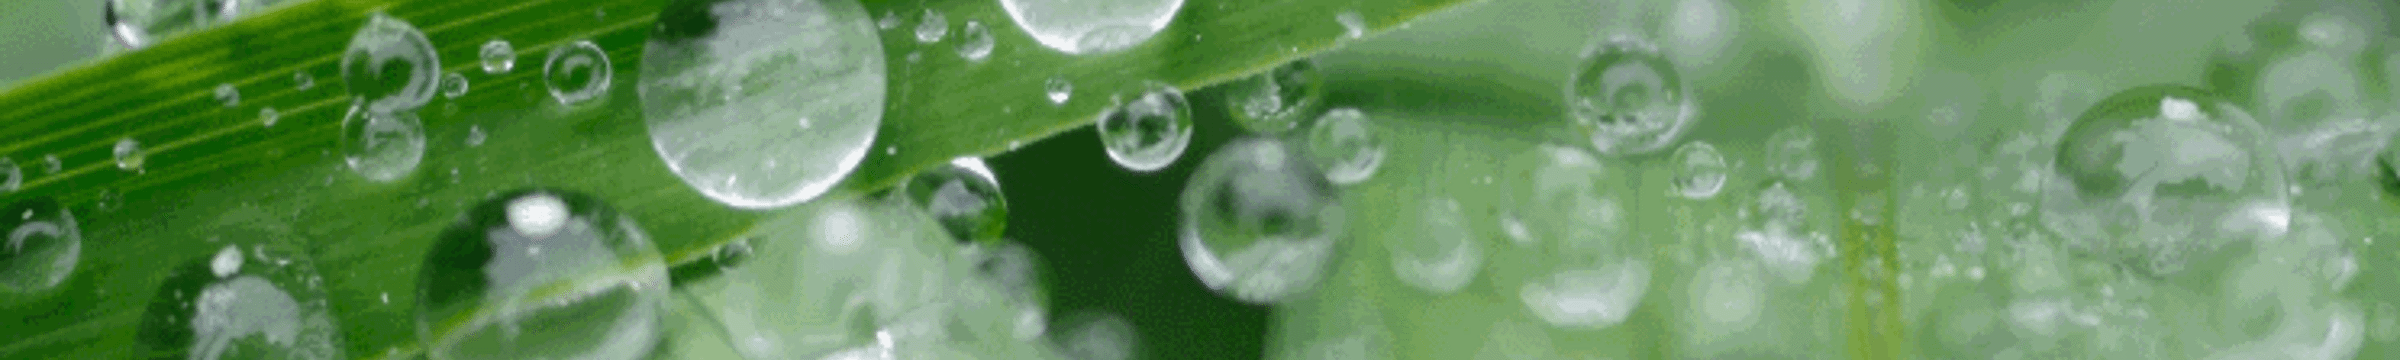 Planta com gotas d'água